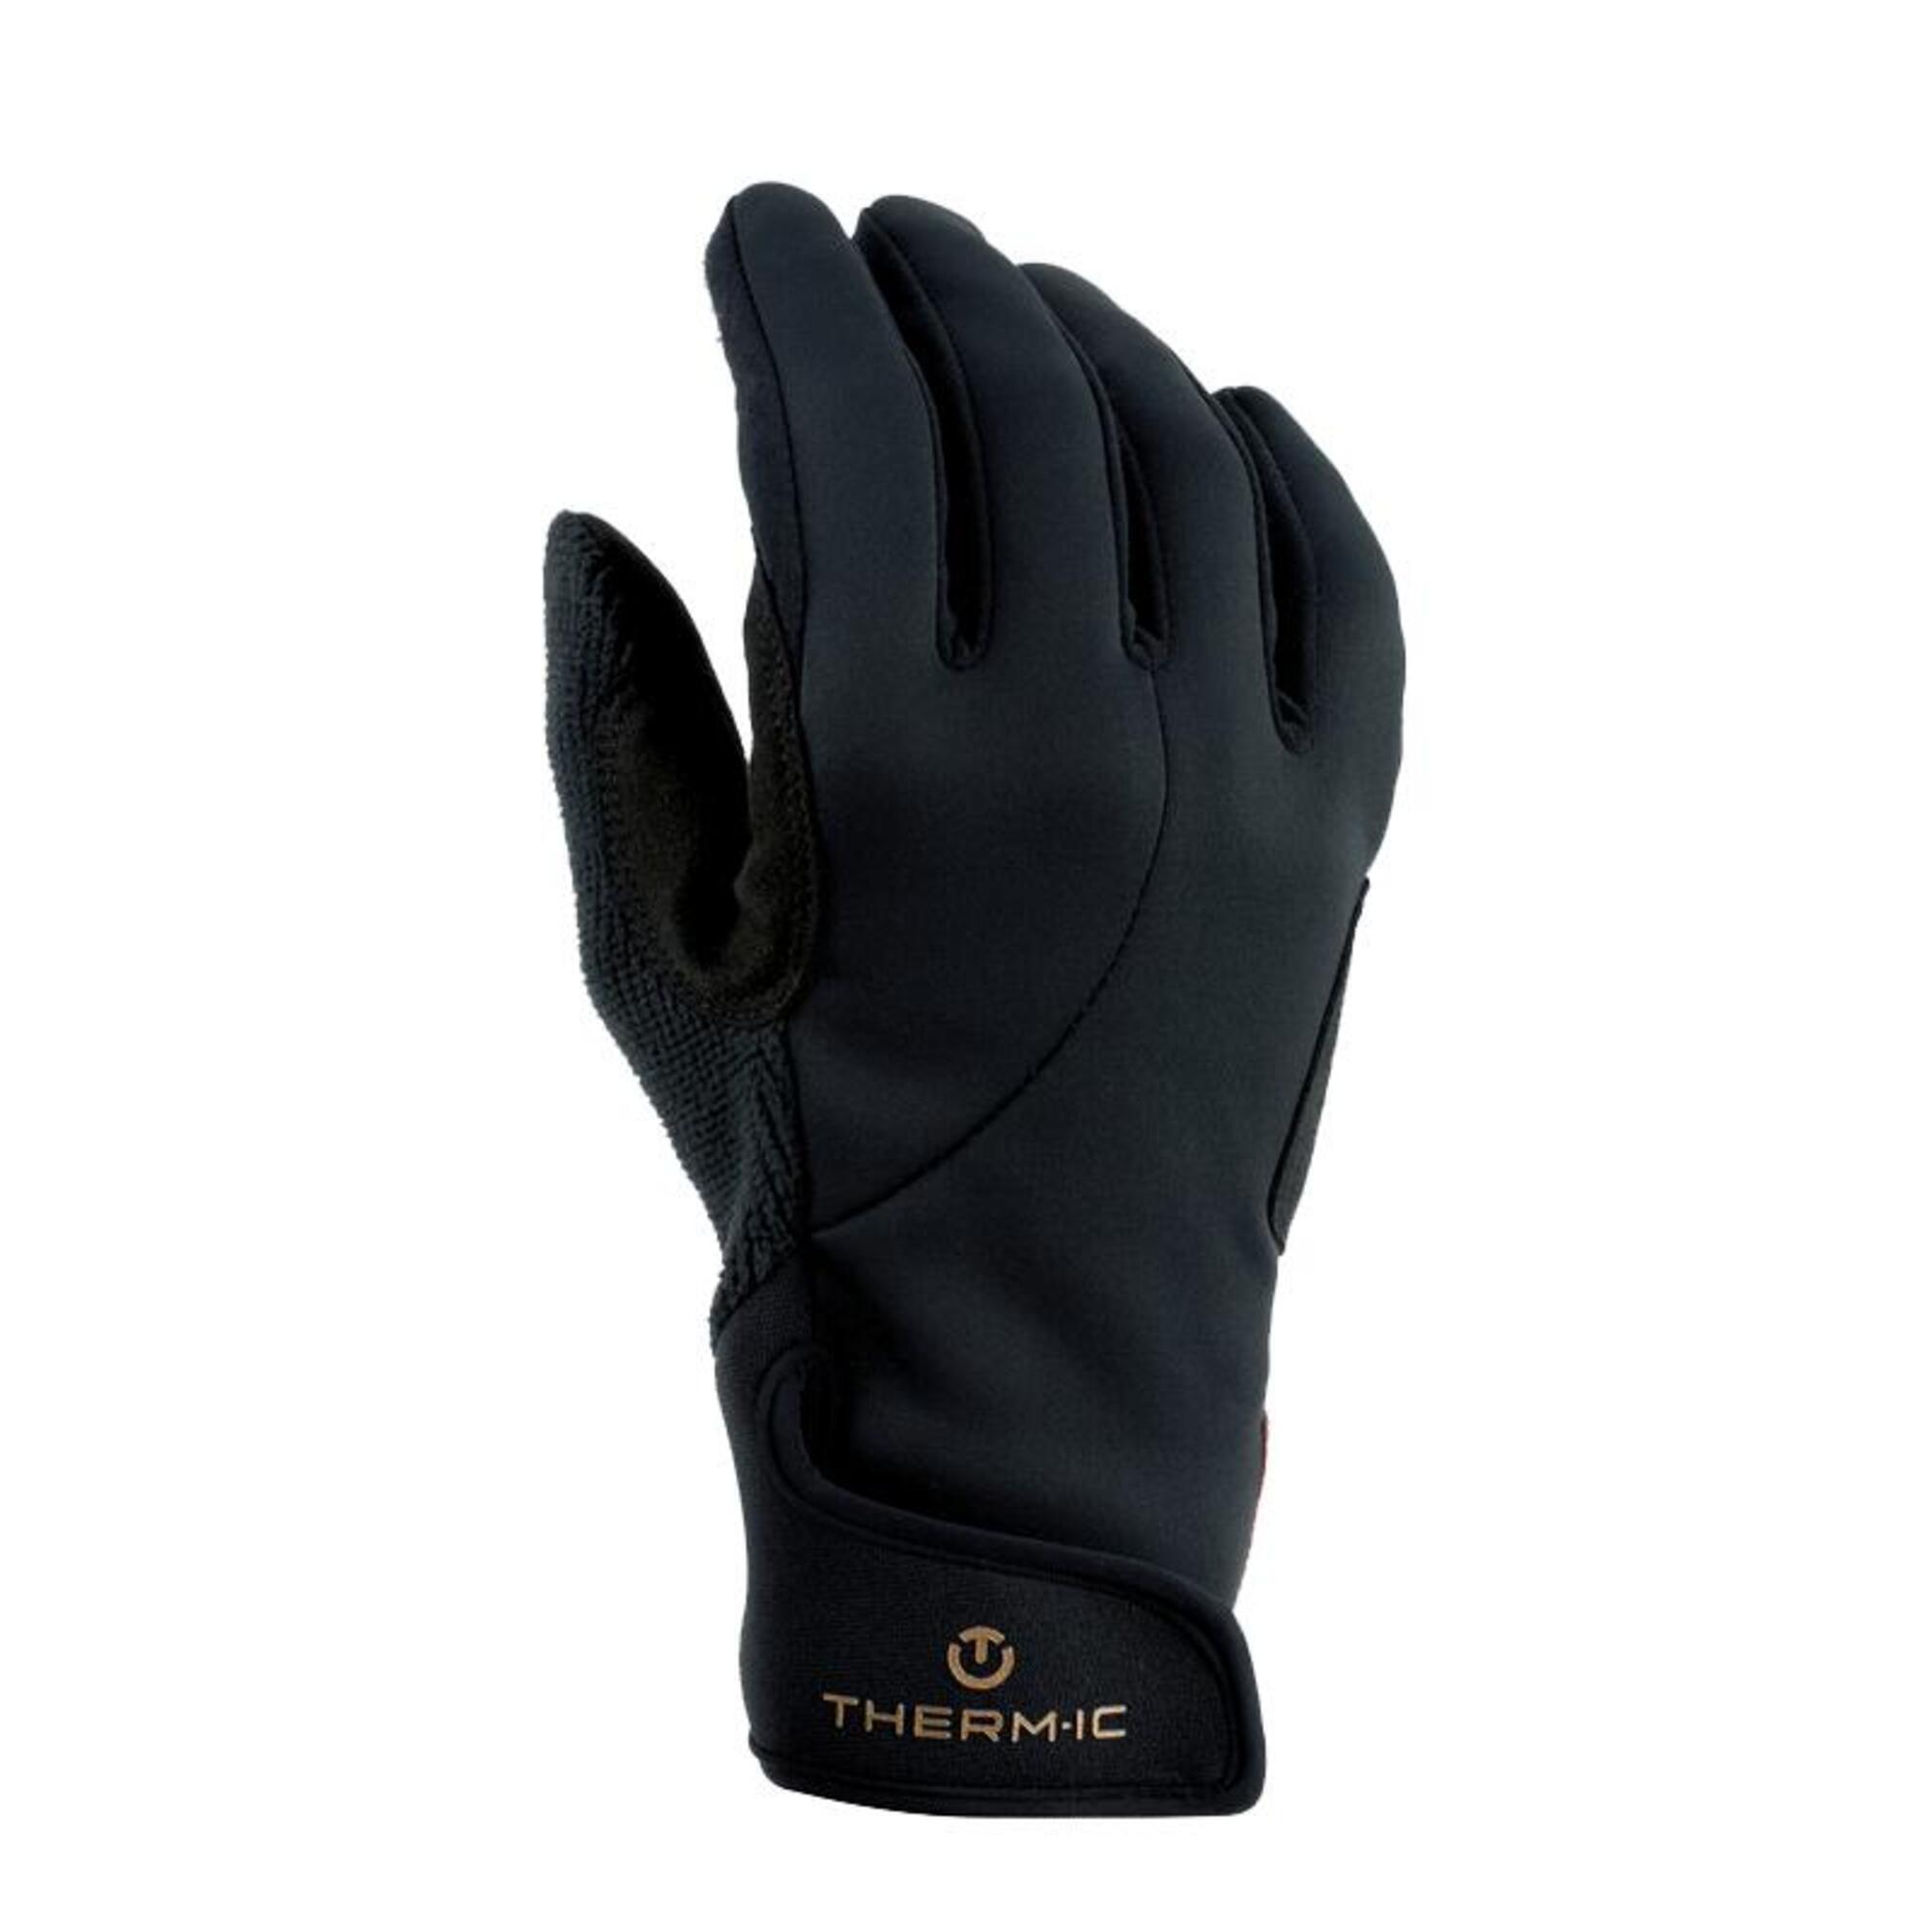 Dünn und atmungsaktiv Handschuh für Wintersportarten - Nordic Exploration Gloves